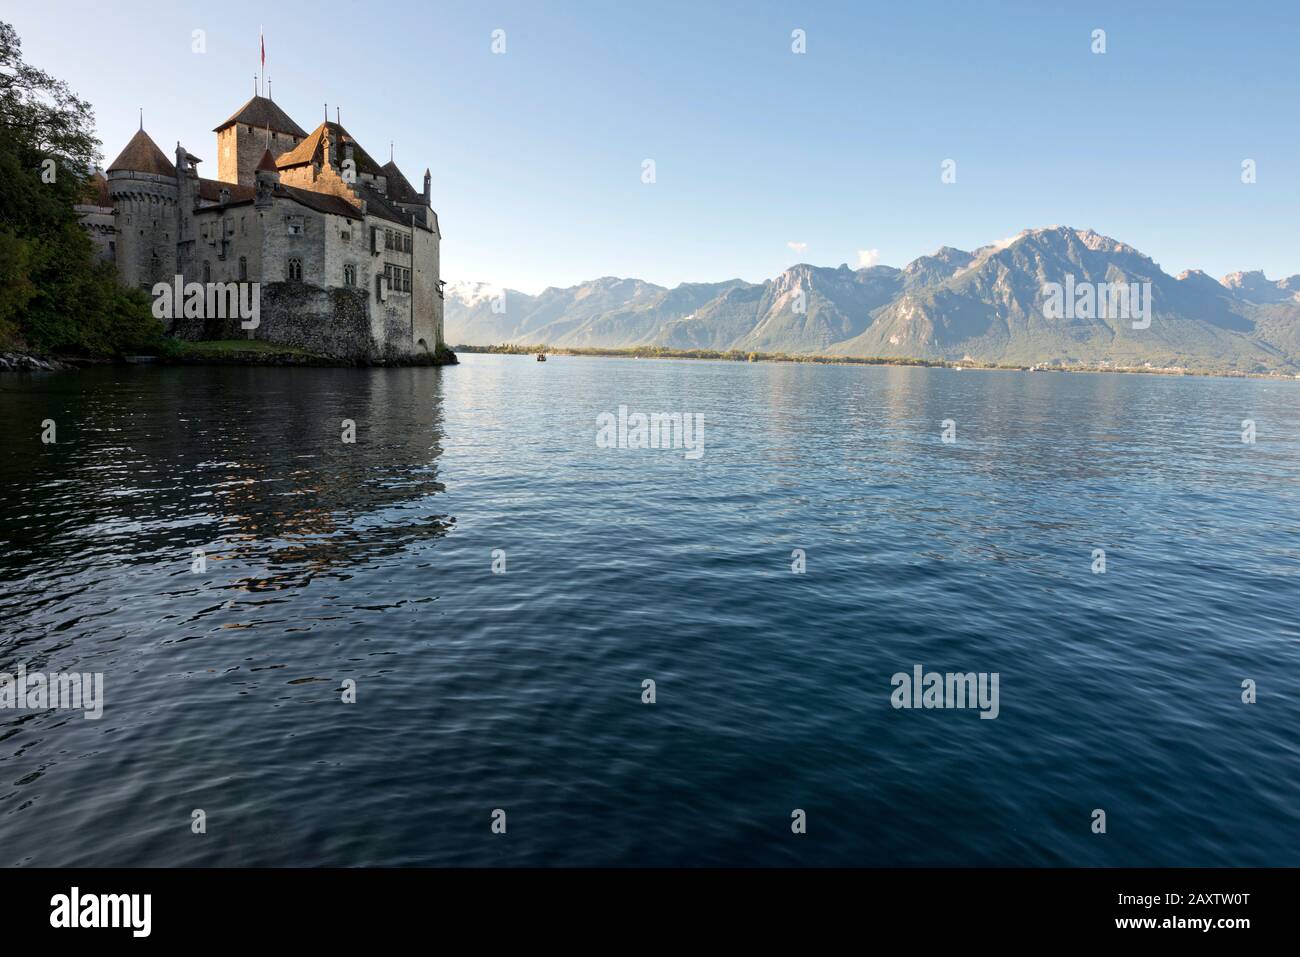 Switzerland, Vaud, Waadt, Montreux, Veytaux, Château de Chillon, Schloss, castle, Lac Léman, Genfer See, Geneva Lake, automne, Herbst, autumn Stock Photo